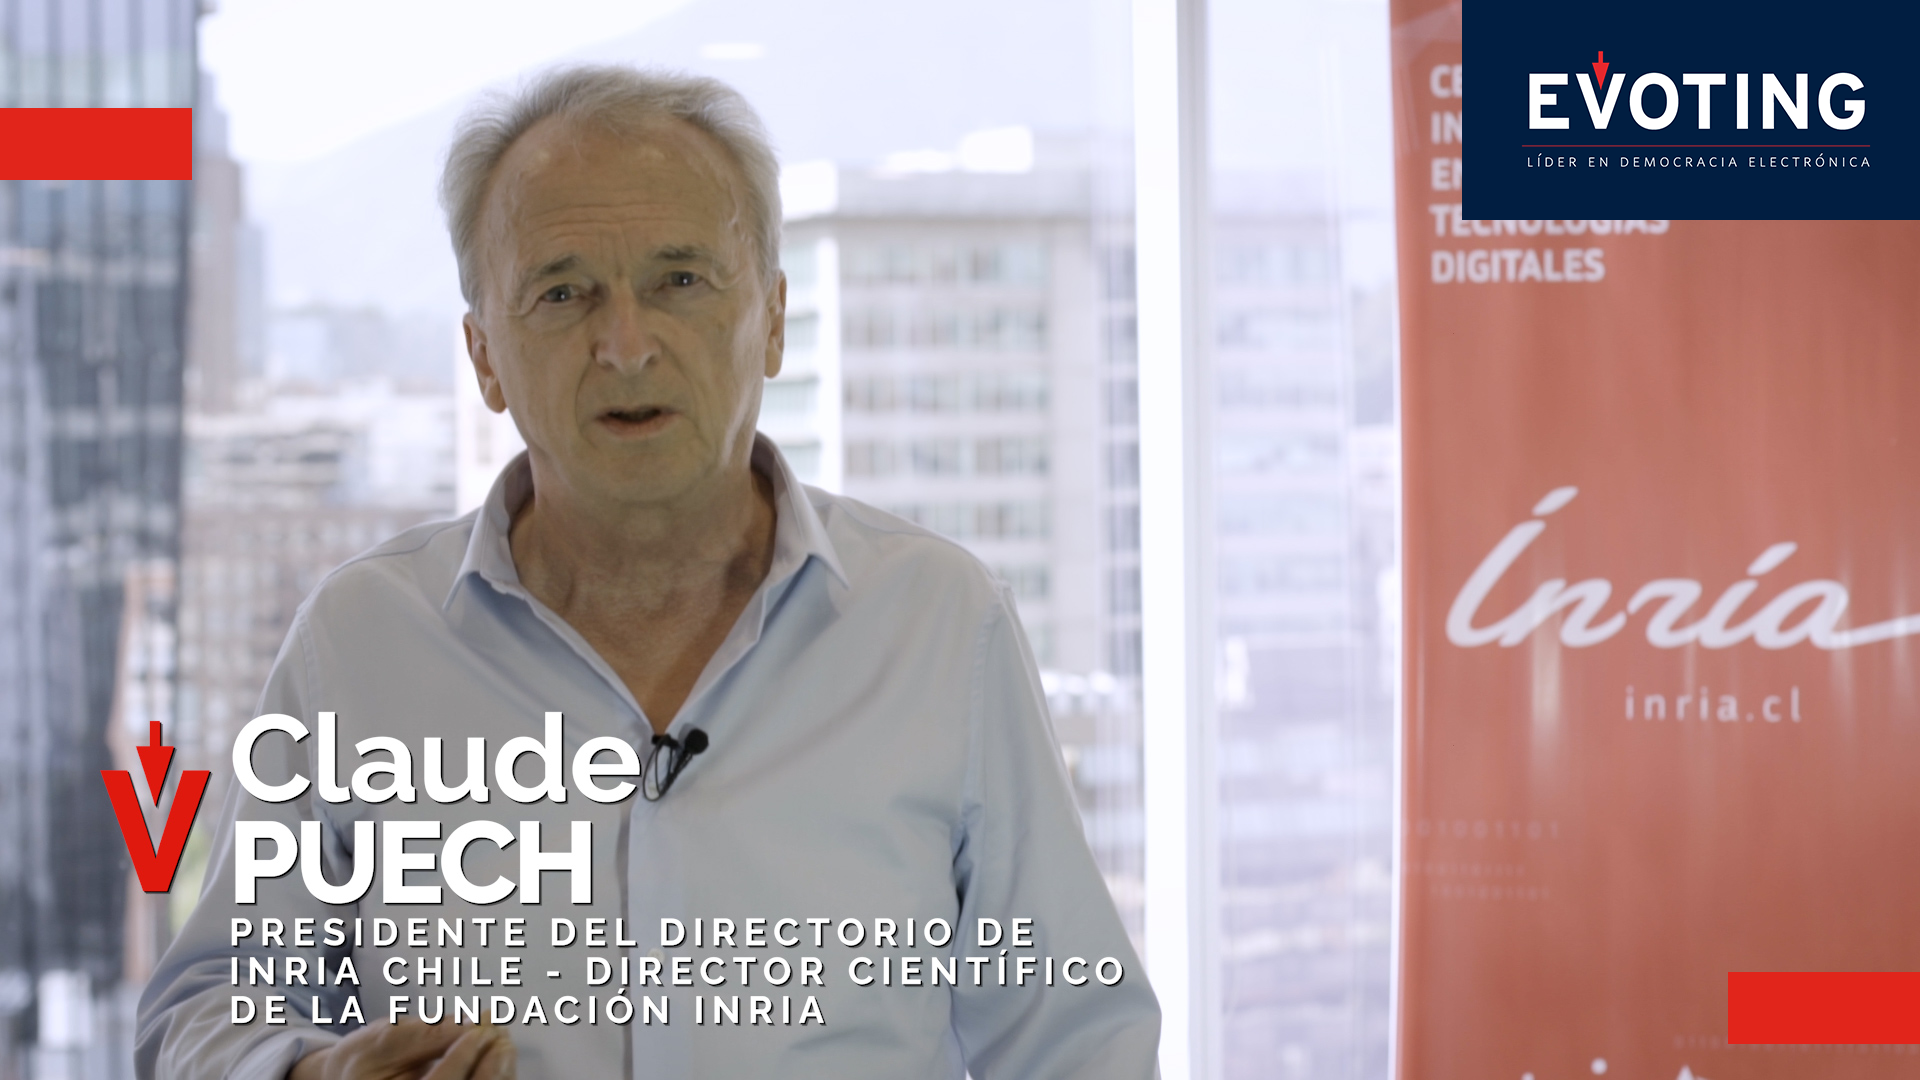 Claude Peuch, Presidente del Directorio de Inria Chile y Director Científico de la Fundación Inria, comparte sus reflexiones sobre cómo fue aportar al crecimiento de EVoting durante sus inicios y cómo ve la proyección del voto electrónico en la región y el resto del mundo